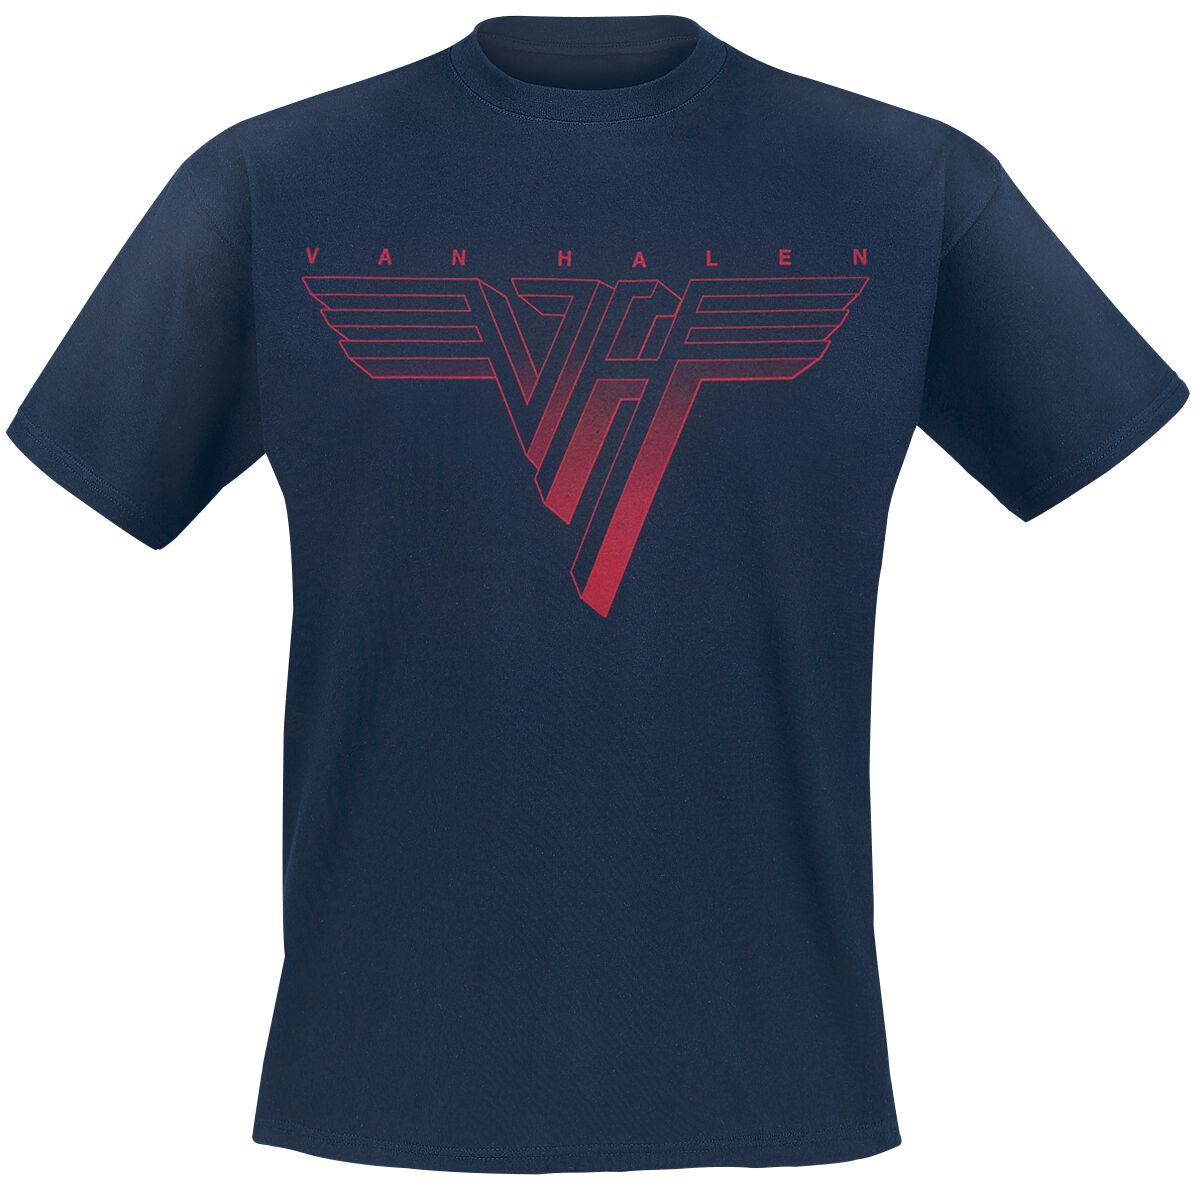 Van Halen T-Shirt - Classic Red Logo - S bis 3XL - für Männer - Größe XL - navy  - Lizenziertes Merchandise!